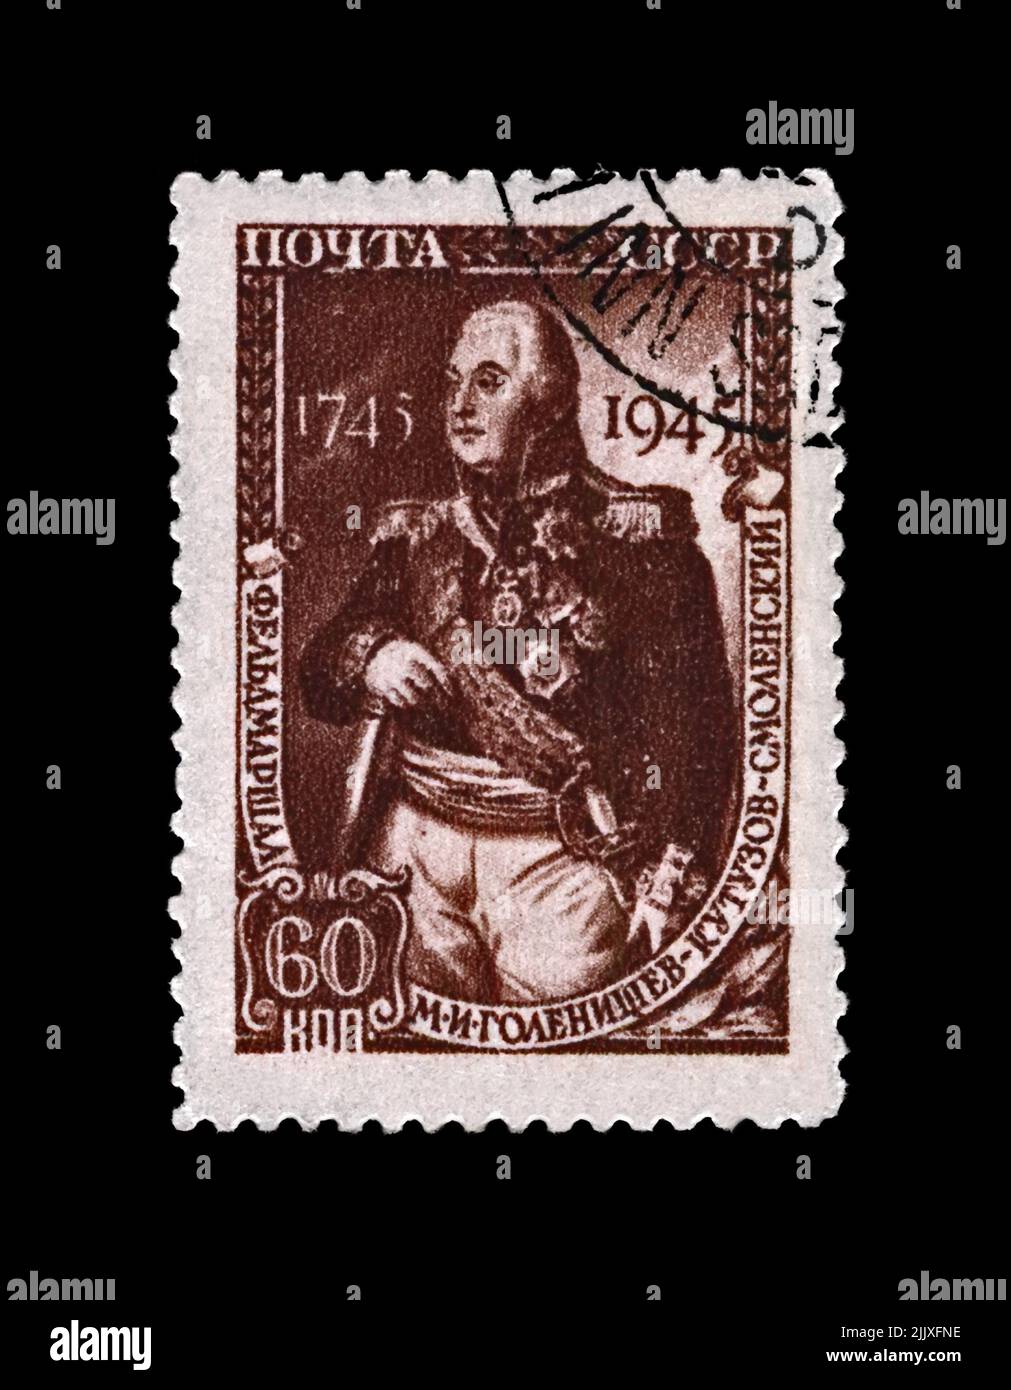 Mikhail Kutuzov (1745-1813), principe del maresciallo di campo, famoso comandante militare russo, circa 1945. Francobollo postale cancellato stampato in URSS Foto Stock